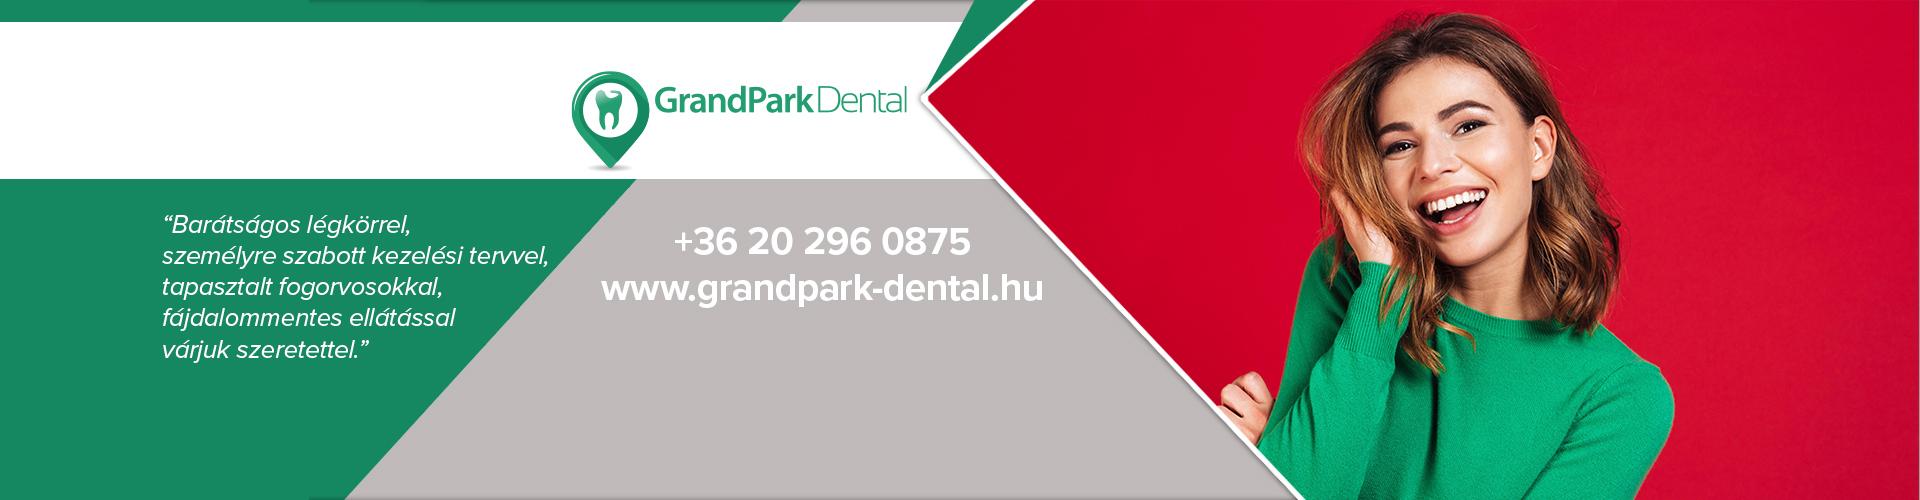 Grandpark Dental